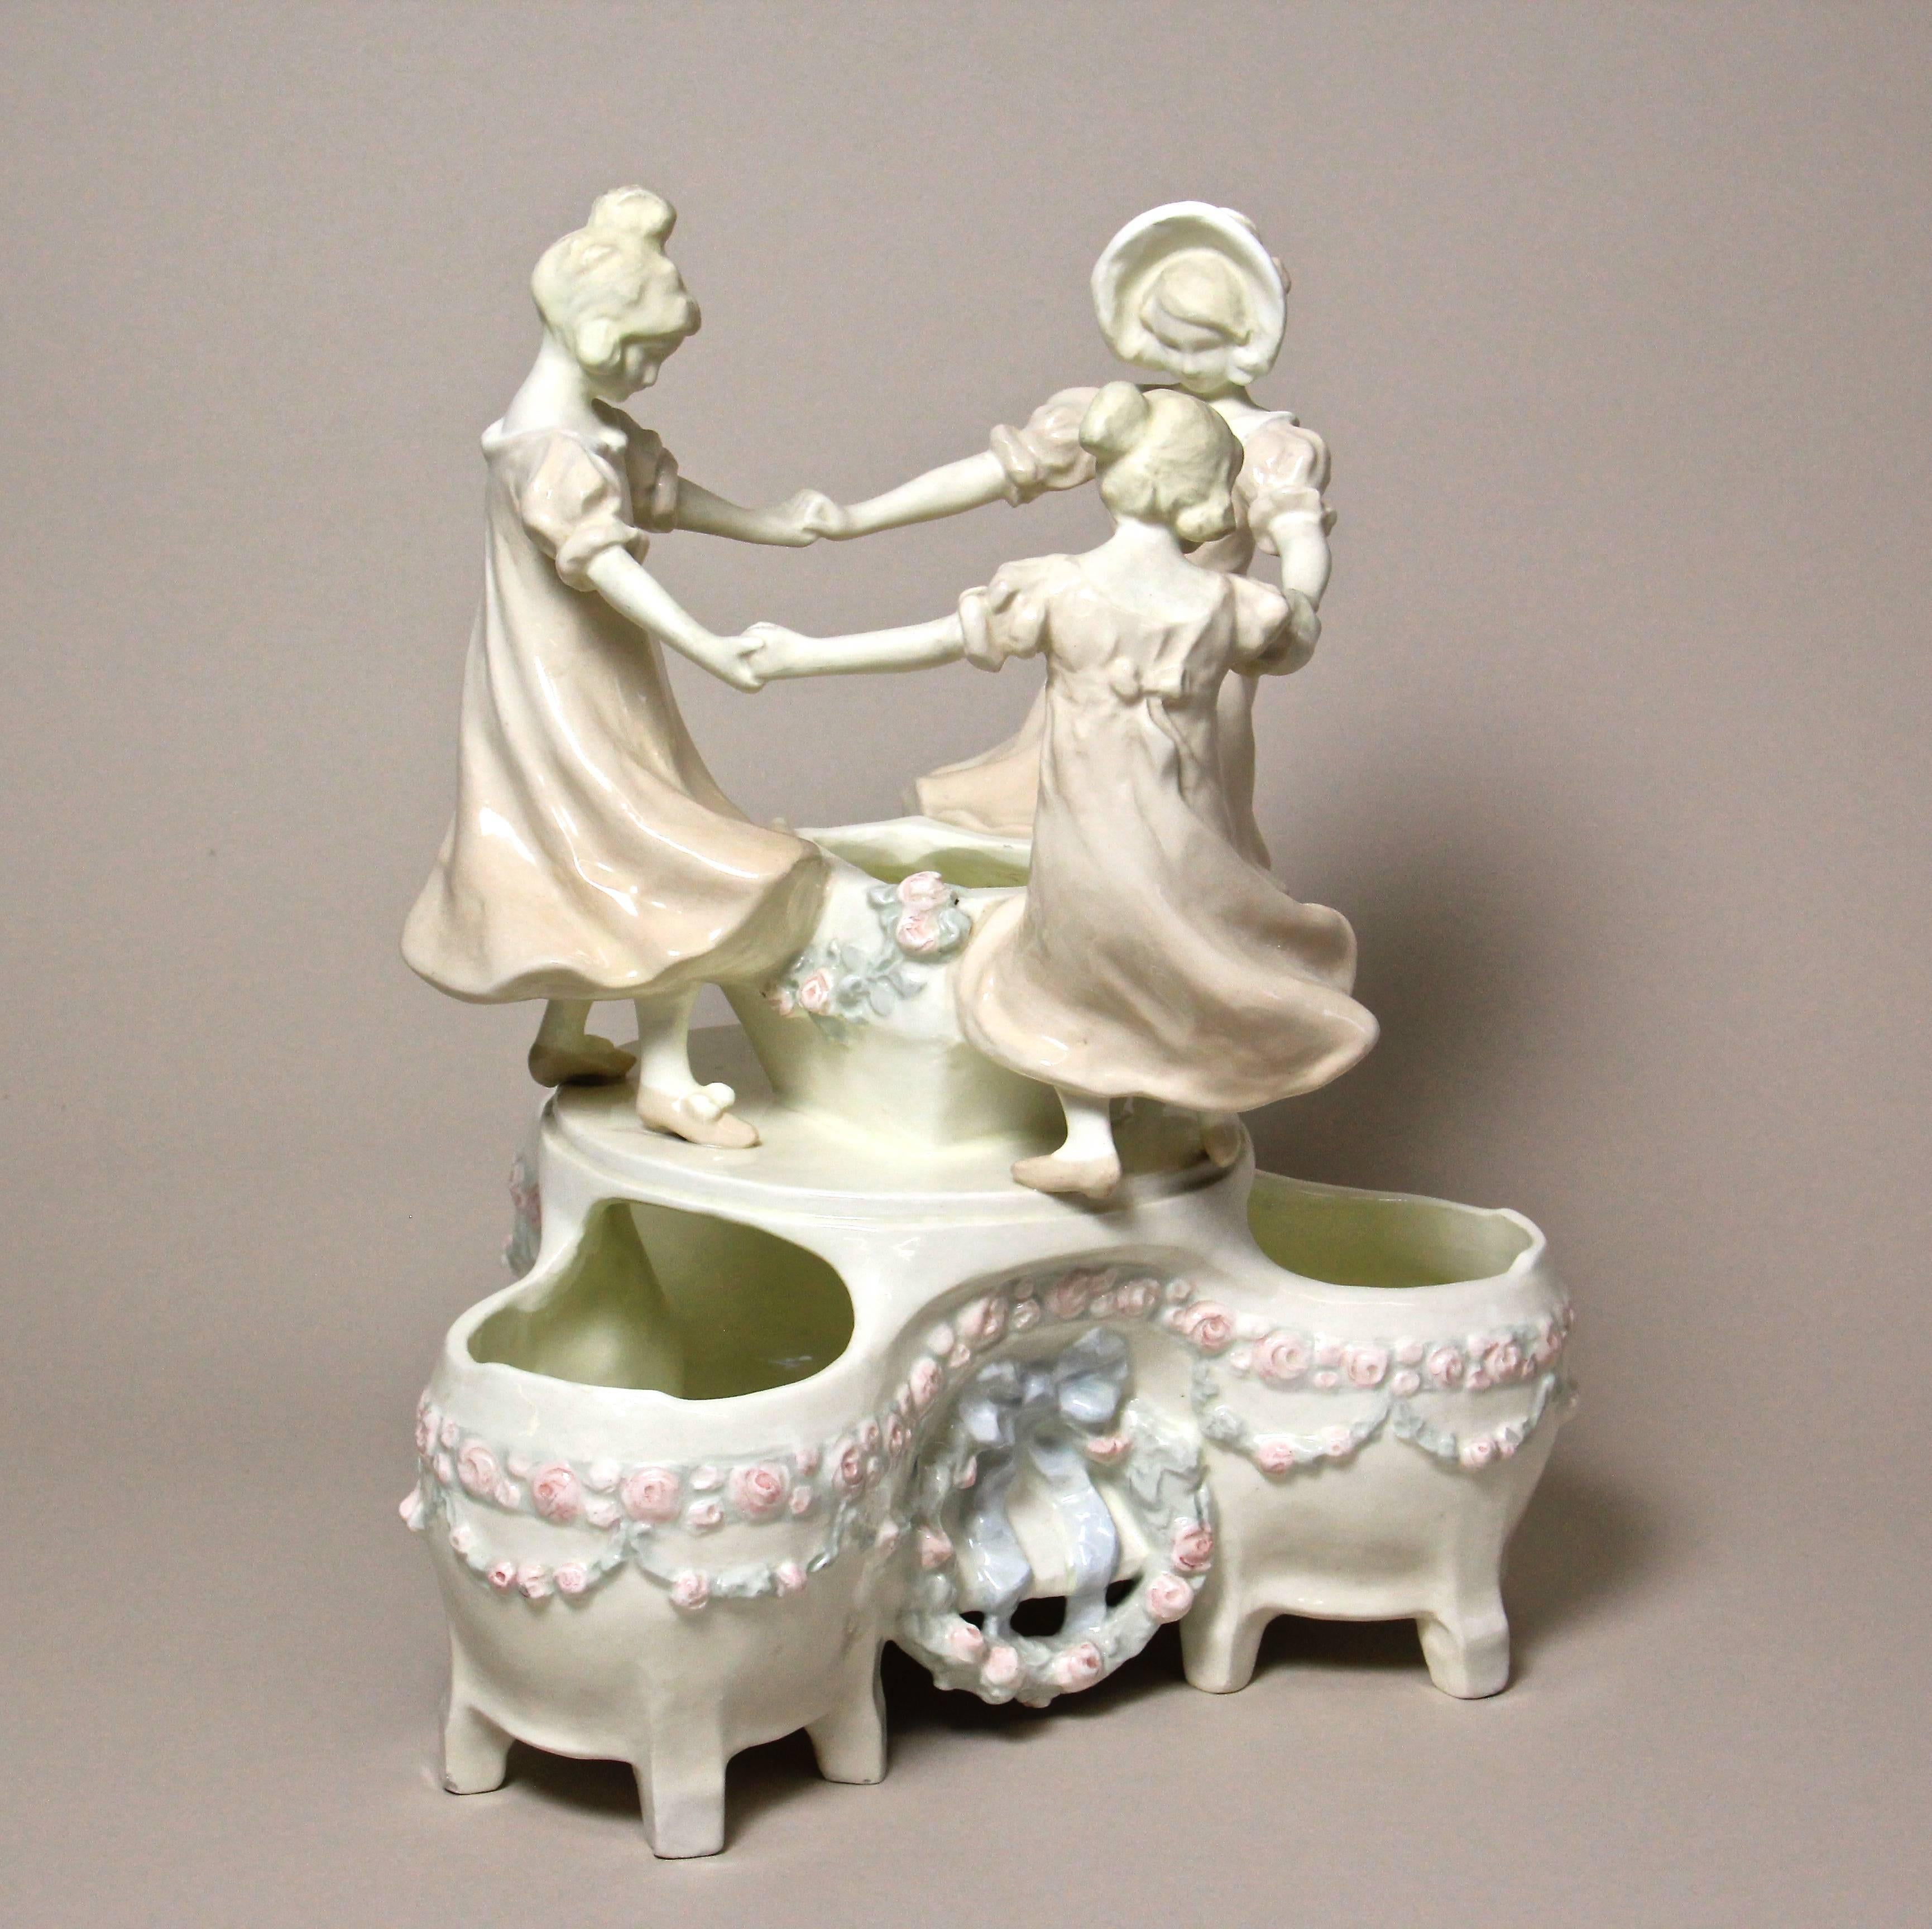 Austrian Impressive Ceramic Centerpiece by Schauer Ceramics, Vienna, circa 1910